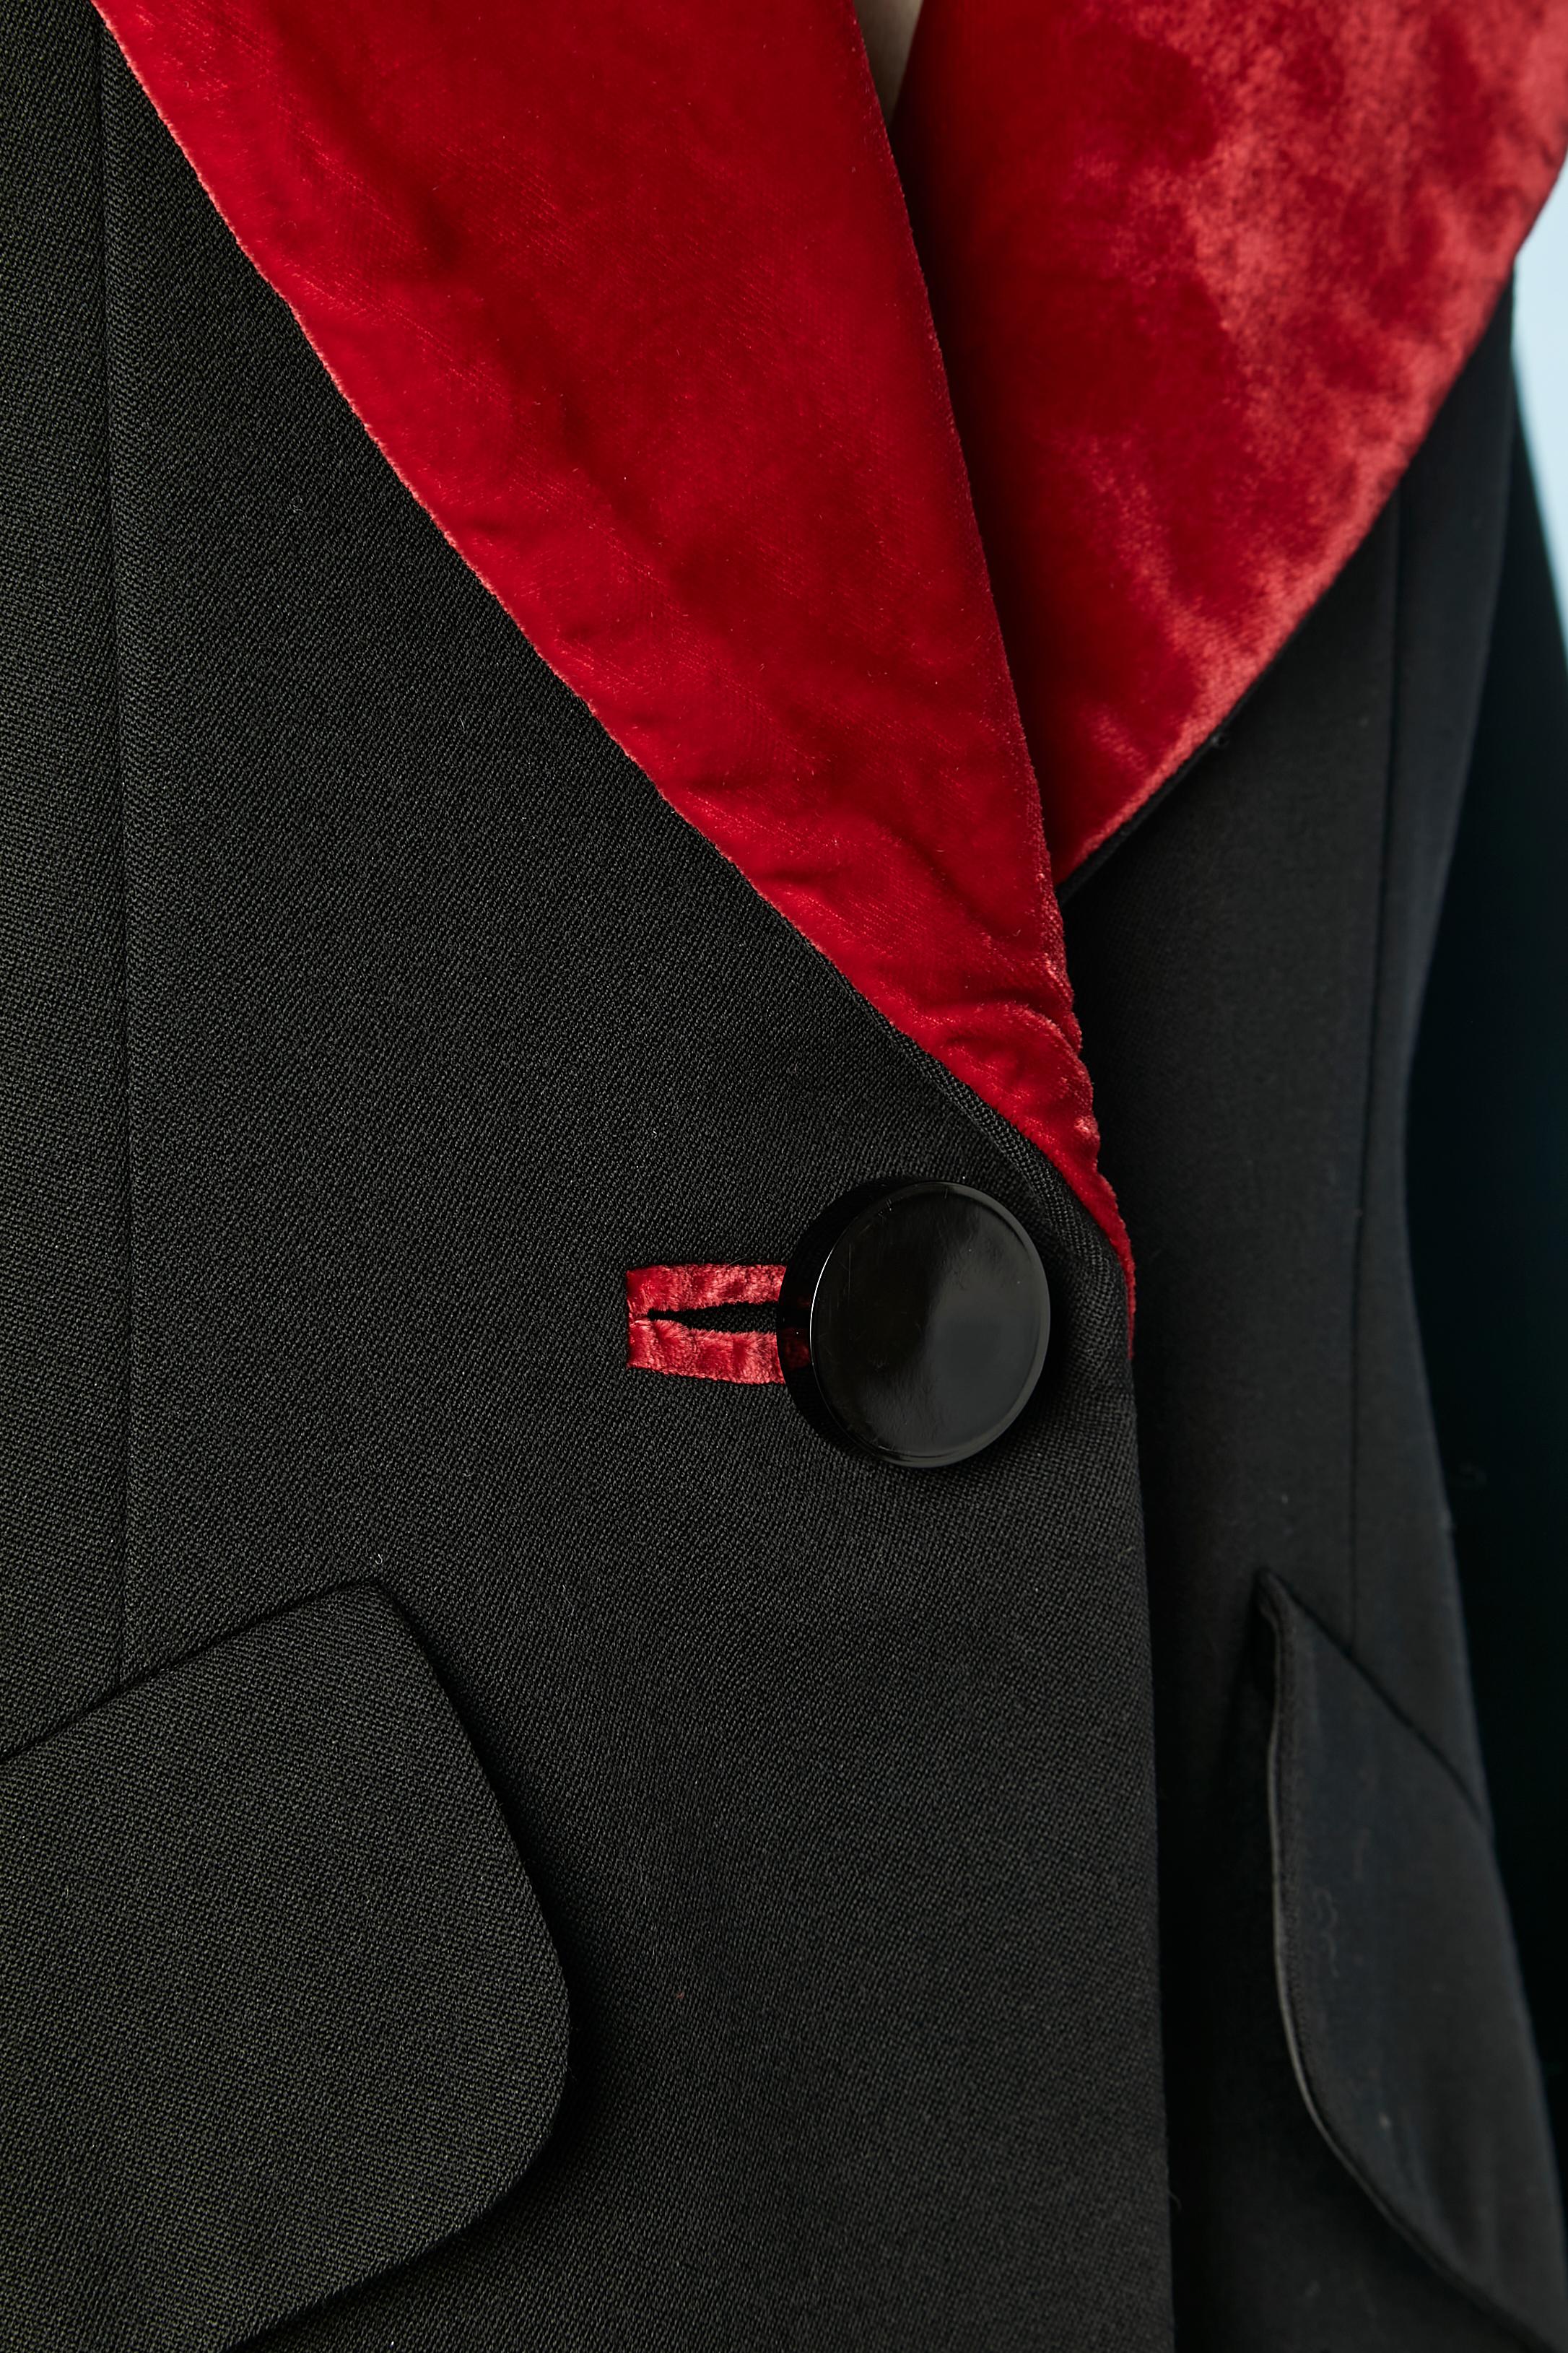 Black skirt-suit with red velvet details Yves Saint Laurent Rive Gauche 1980's  In Excellent Condition For Sale In Saint-Ouen-Sur-Seine, FR